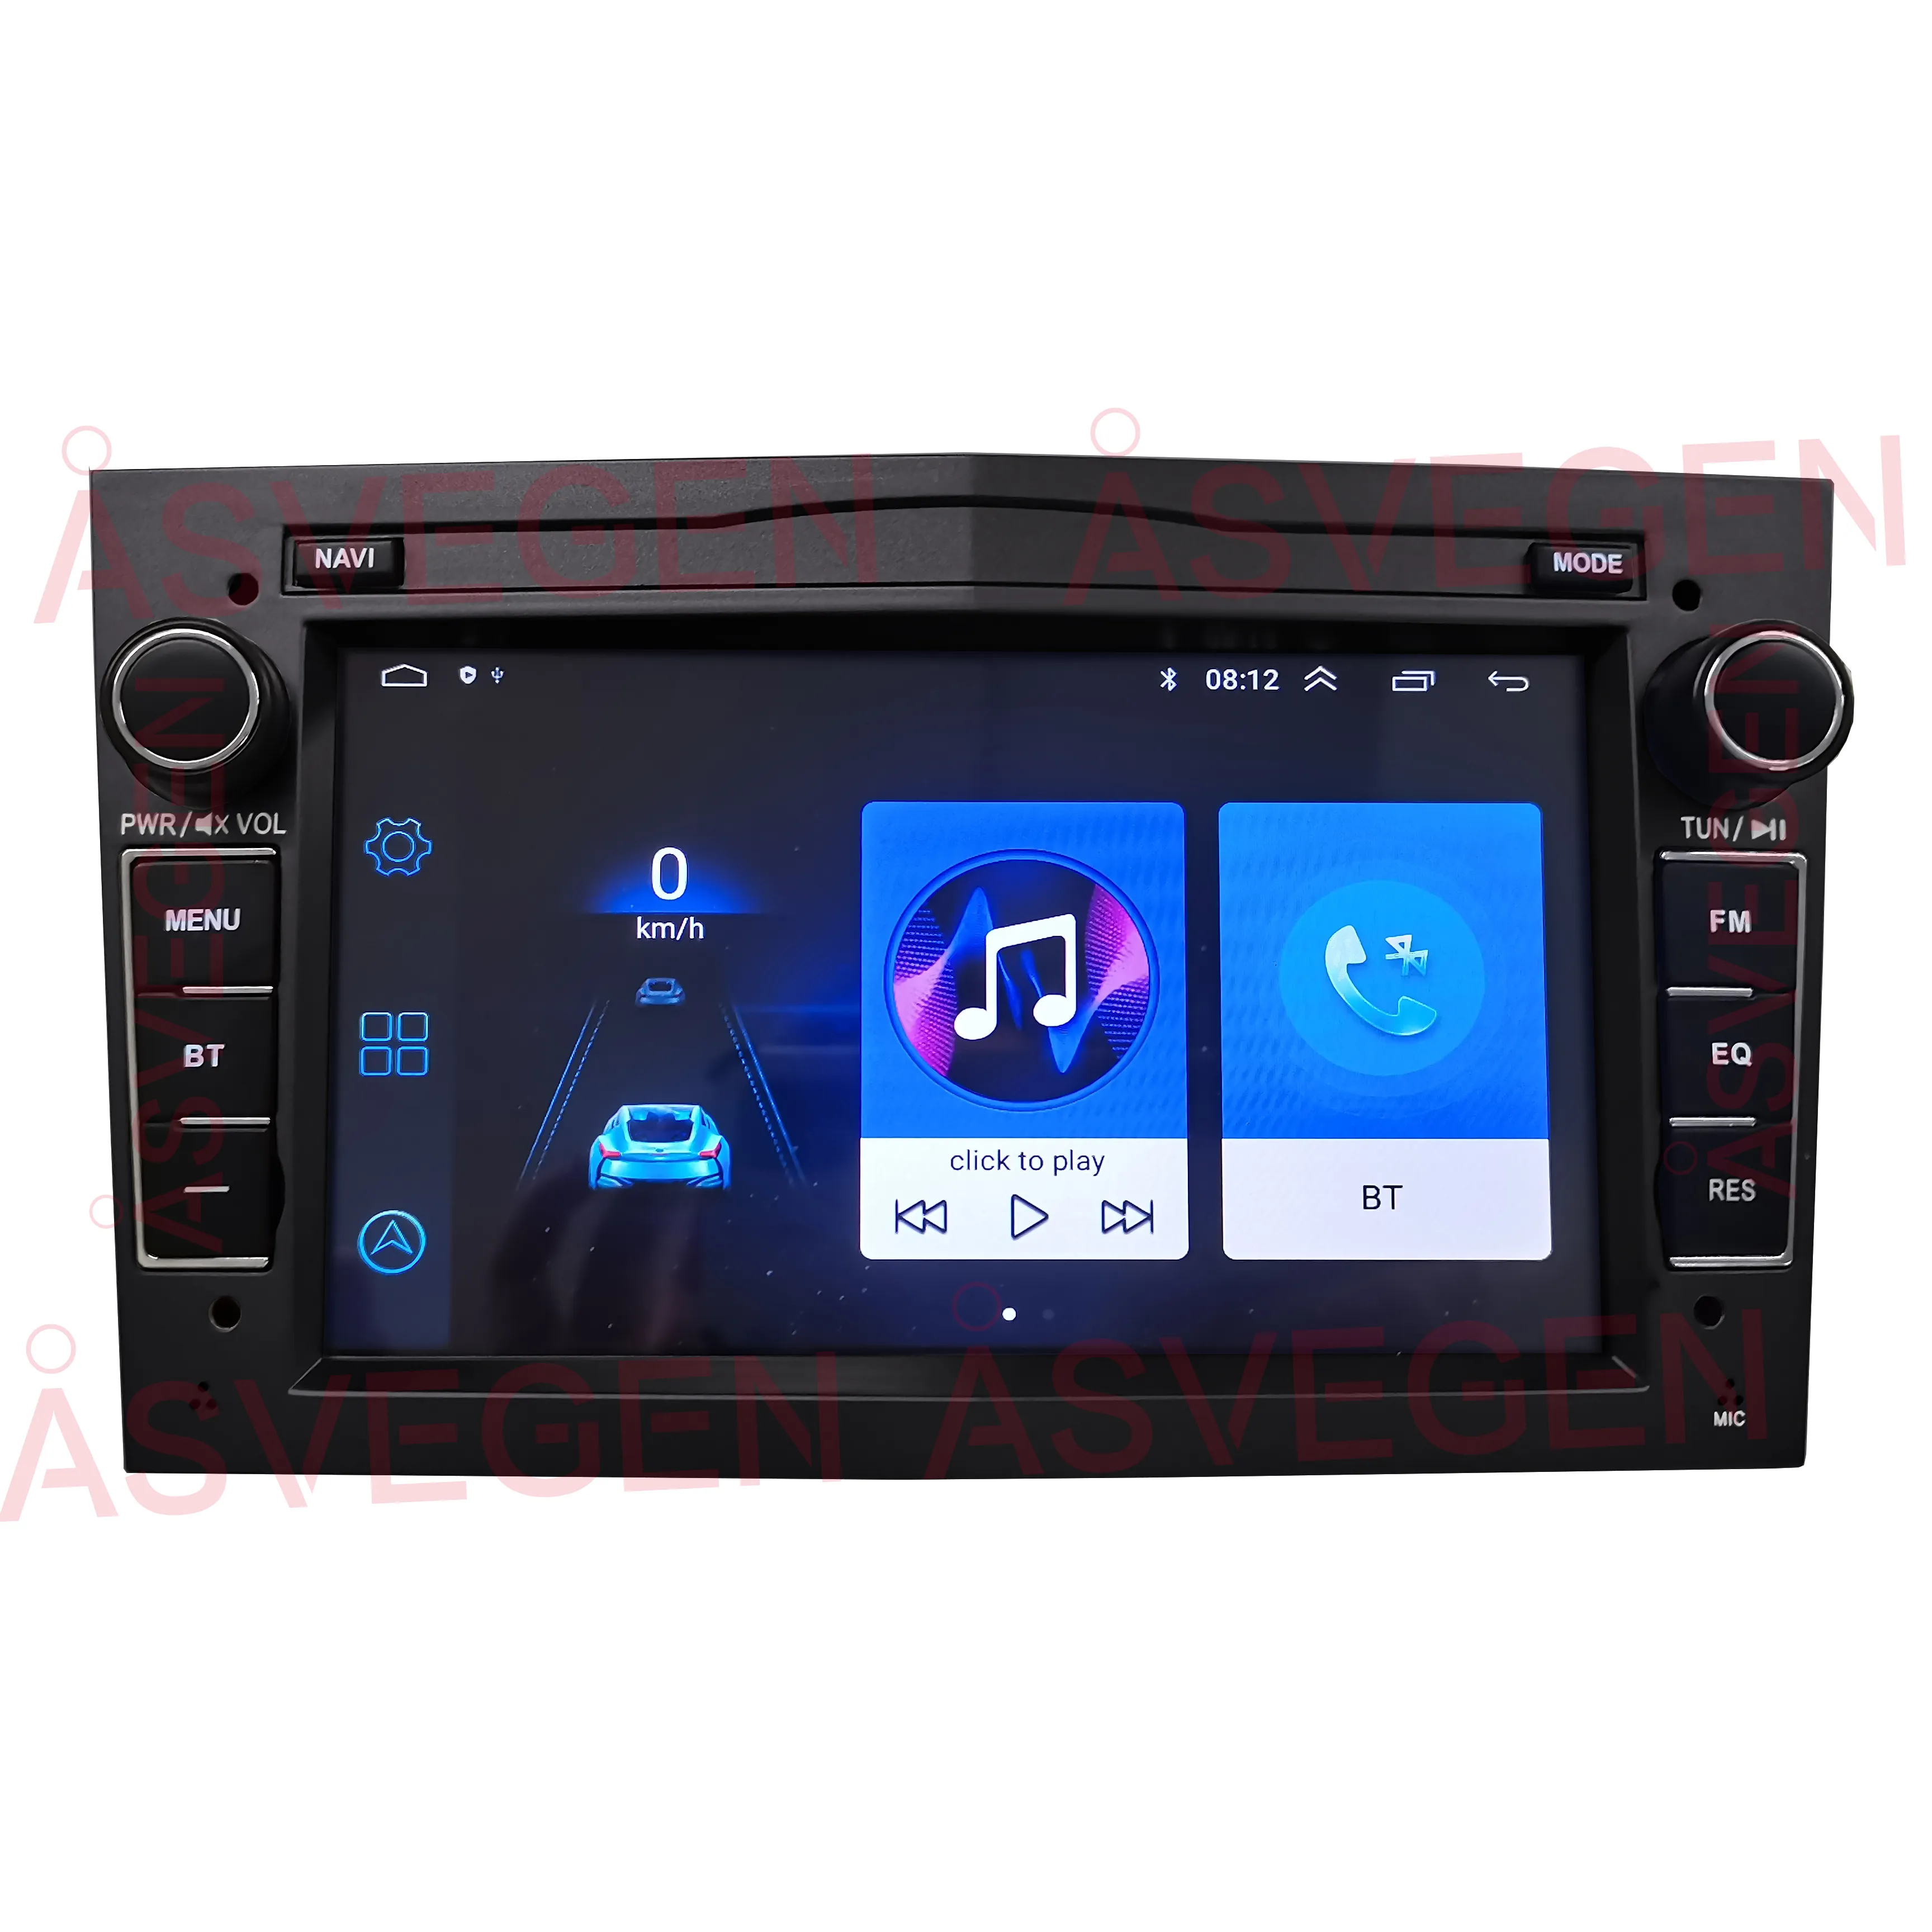 Nuovo prodotto! Android 9 Auto radio player di Navigazione GPS per Opel Vivaro Zafira Meriva con carplay HIFI Stereo mp5 Multimedia